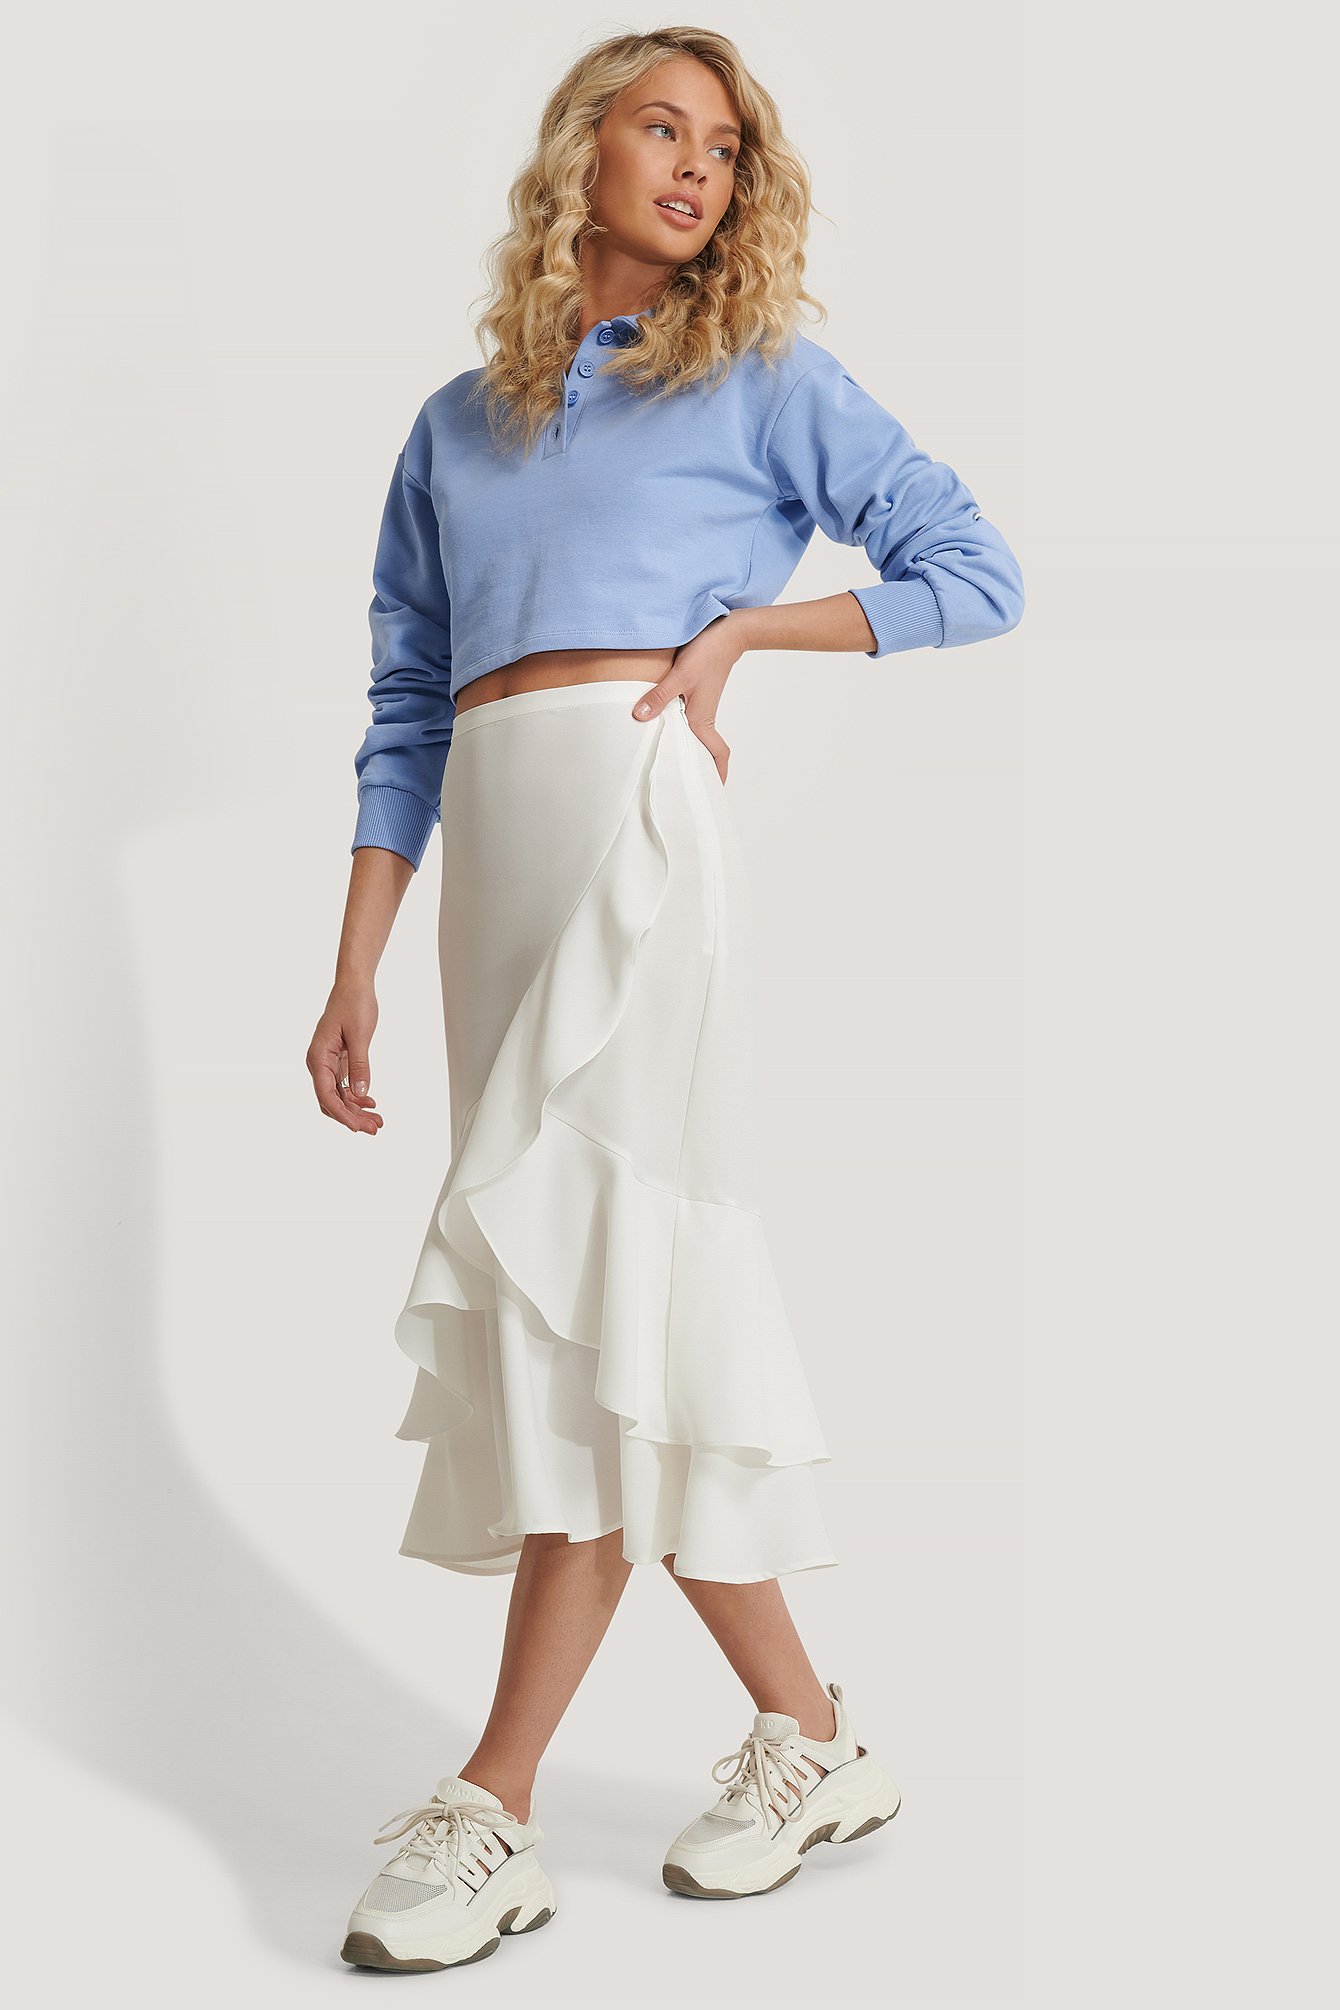 Flounce Midi Skirt Outfit.